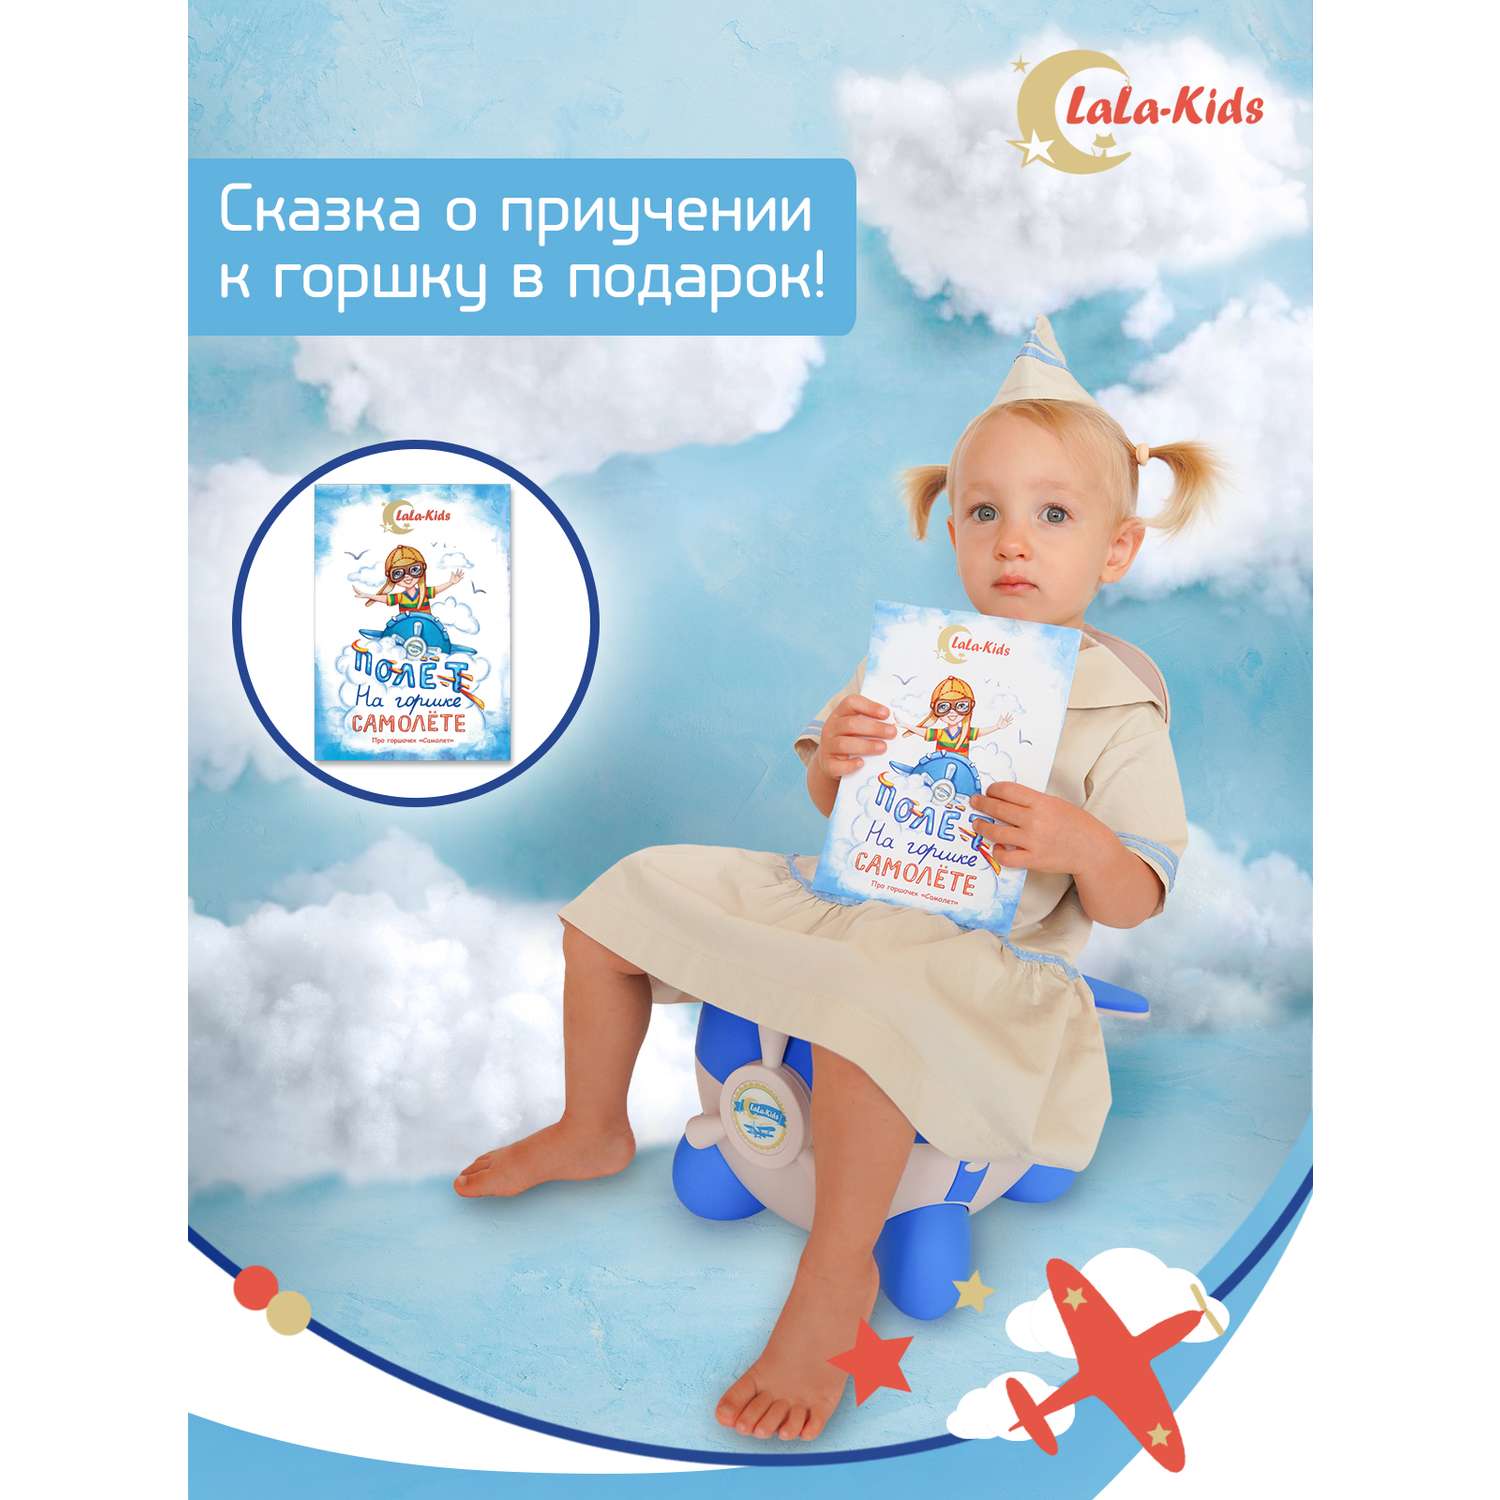 Горшок LaLa-Kids с мягким сиденьем Самолет голубой - фото 9